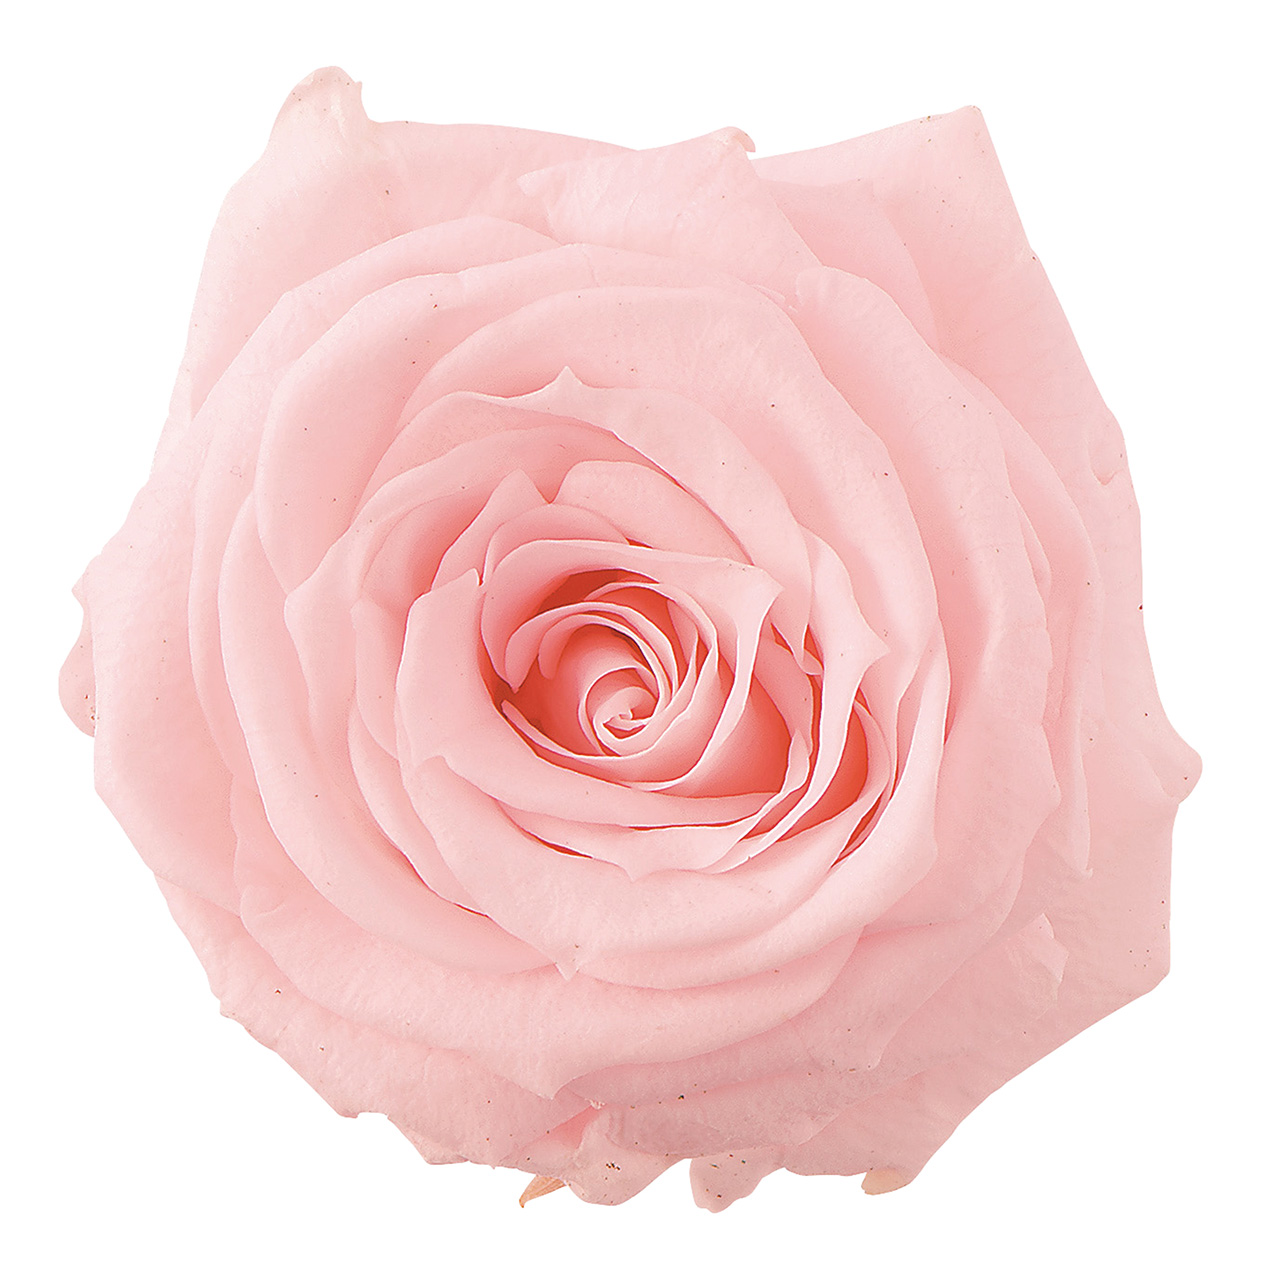 マイフラ】 通販/大地農園 シャーロット ブライダルピンク プリザーブドフラワー 12輪入 ローズ バラ DO002592-101(ブライダルピンク):  プリザーブドフラワー/全国にMAGIQ、花器、花資材などをお届けします。